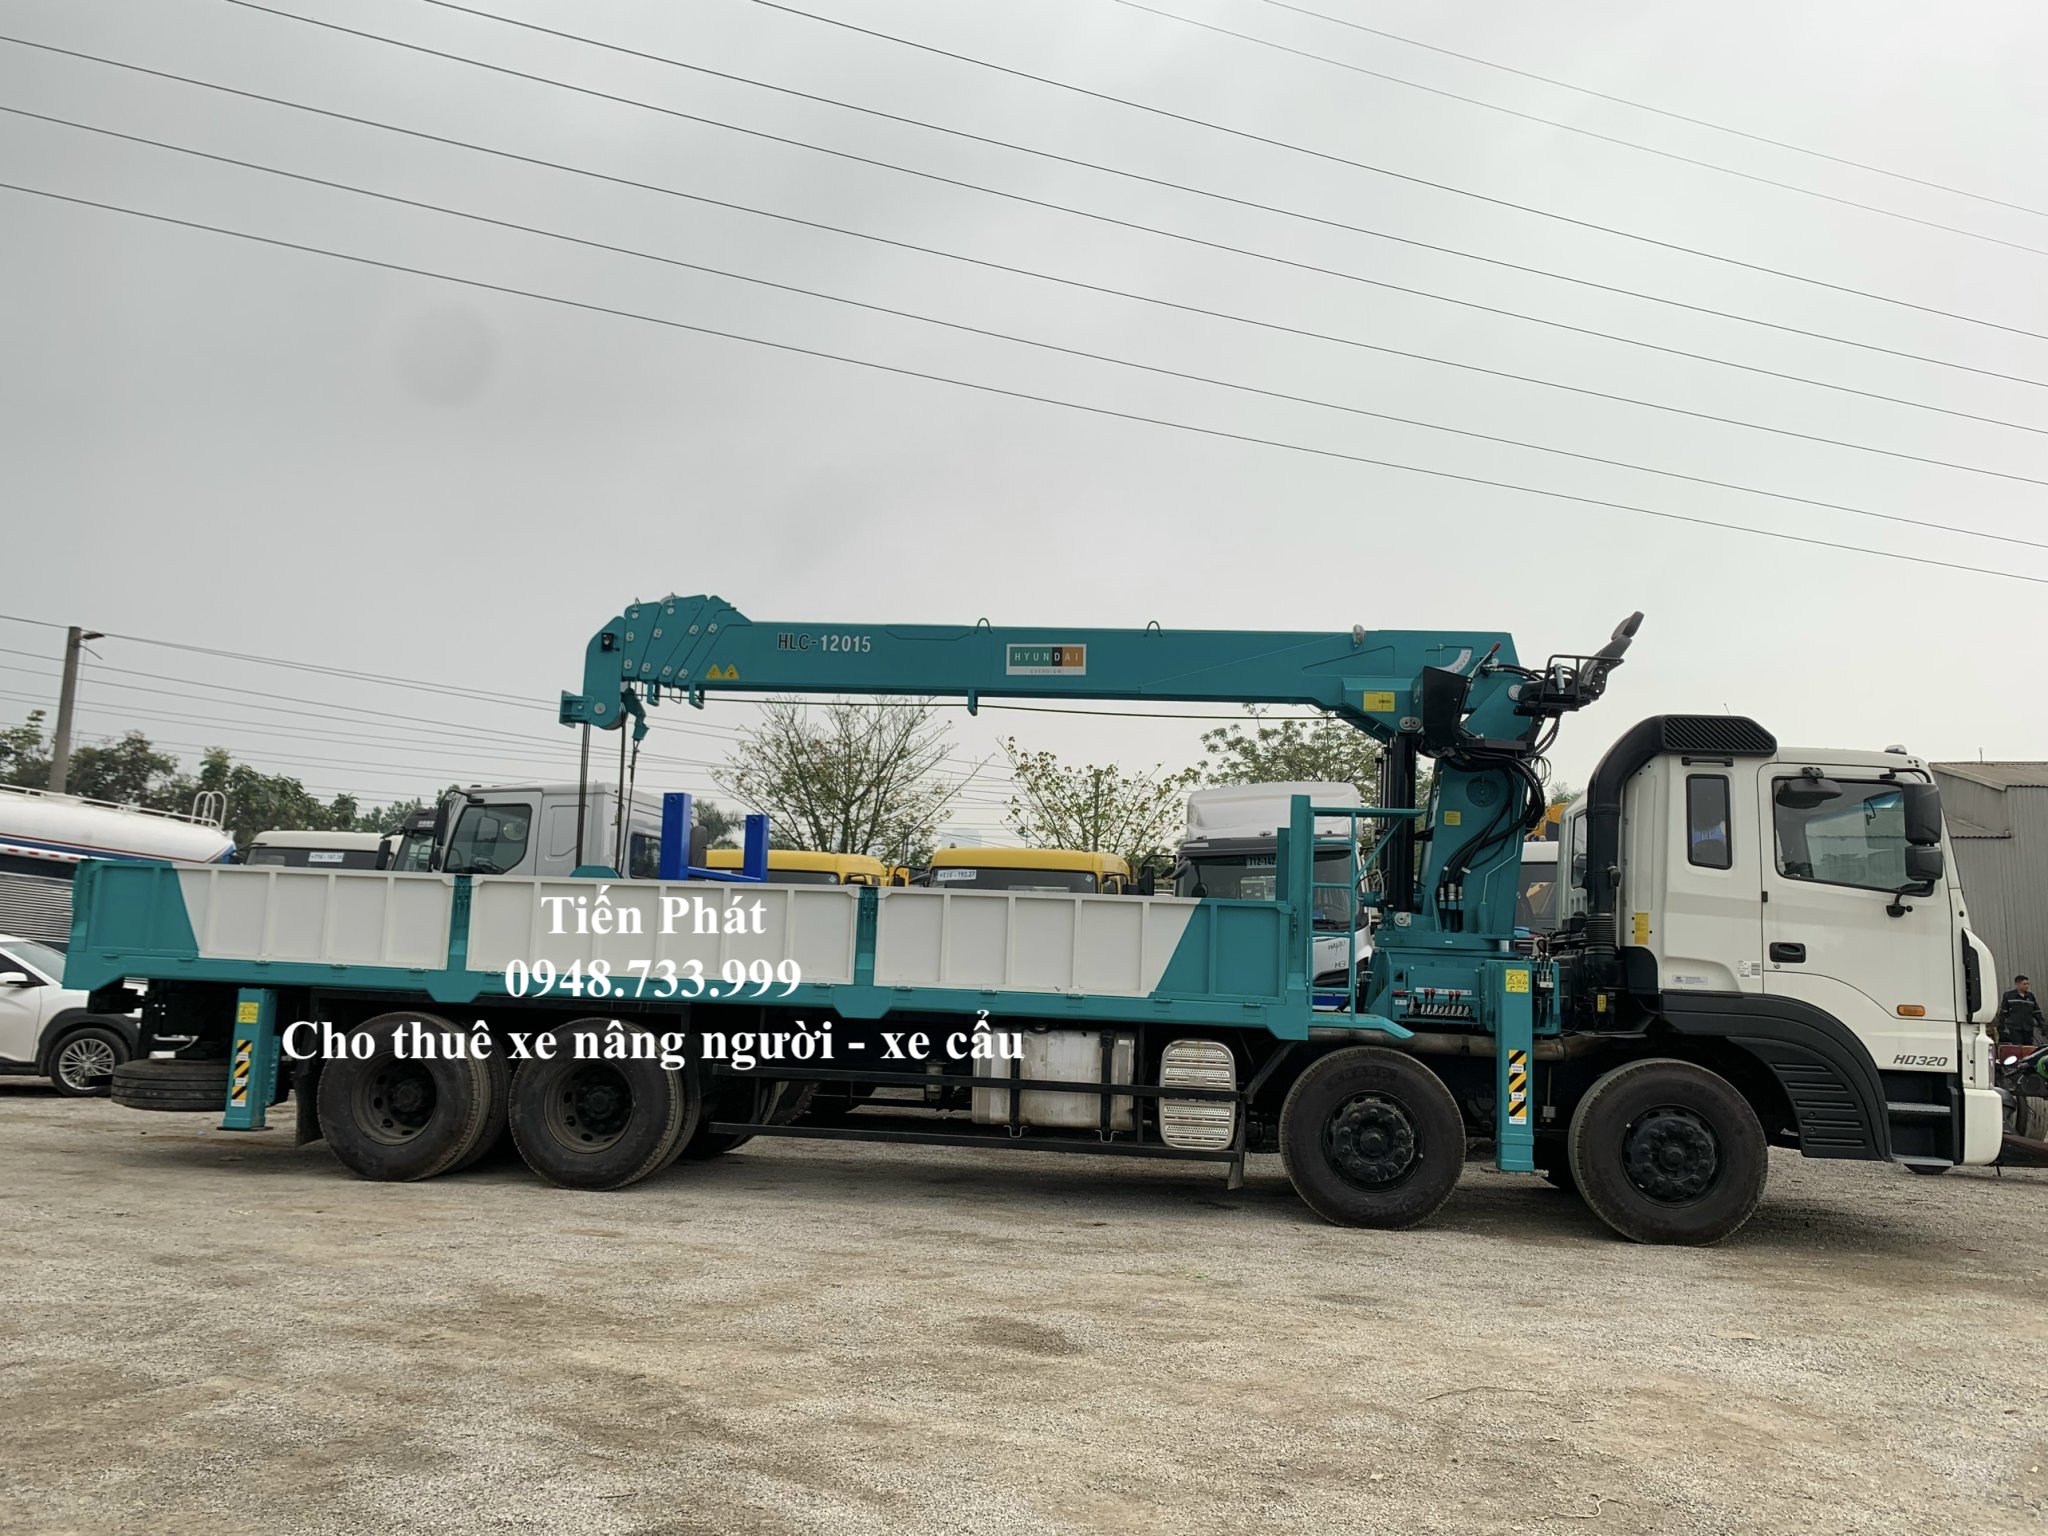 Cho thuê xe cẩu thùng 15 tấn tại KCN Đồng An 0948733999